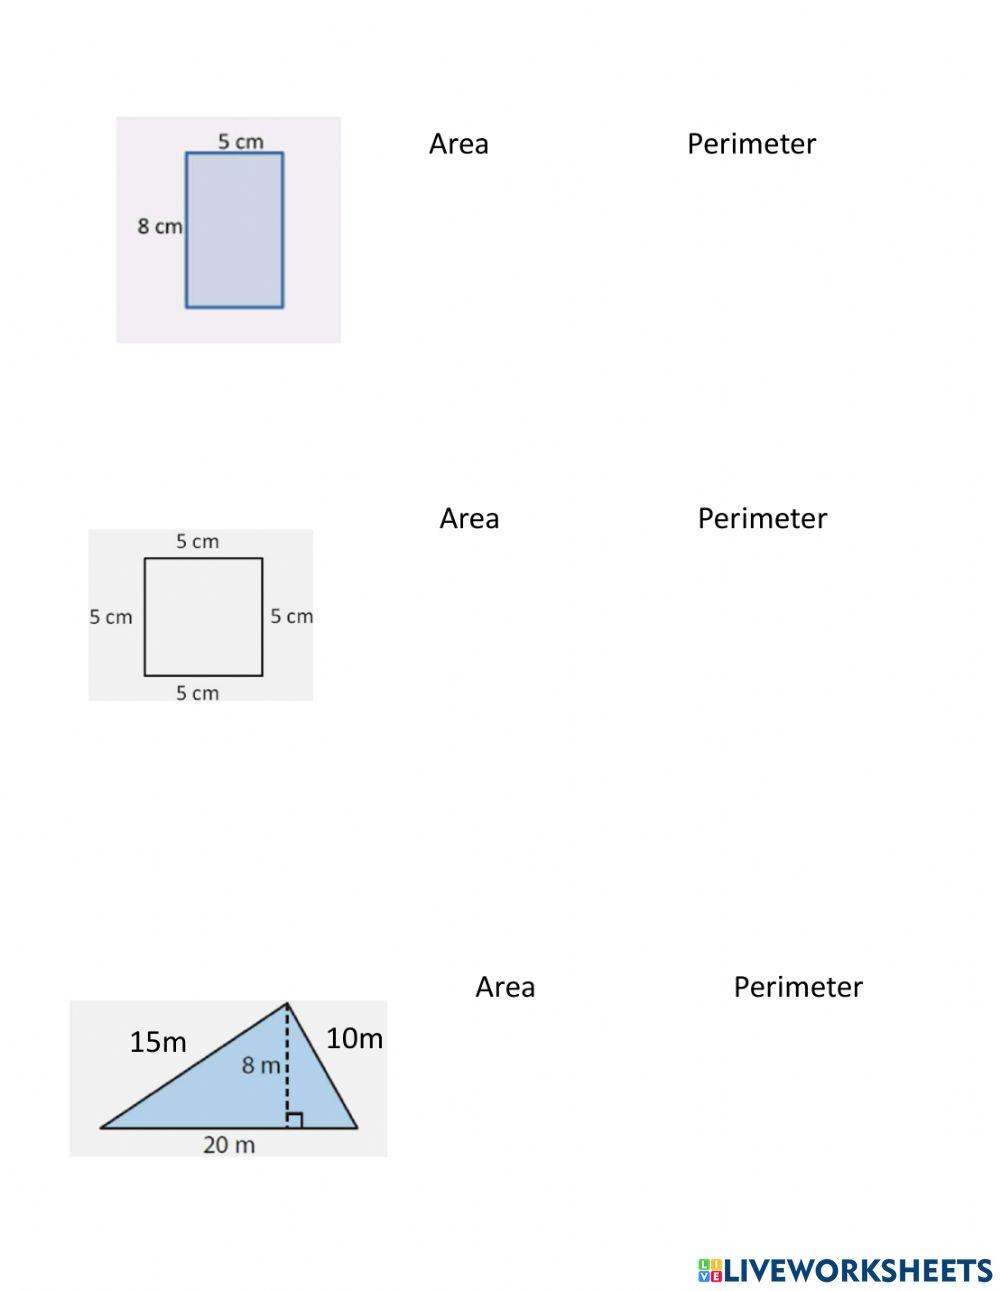 Perimeter and Area Quiz mod